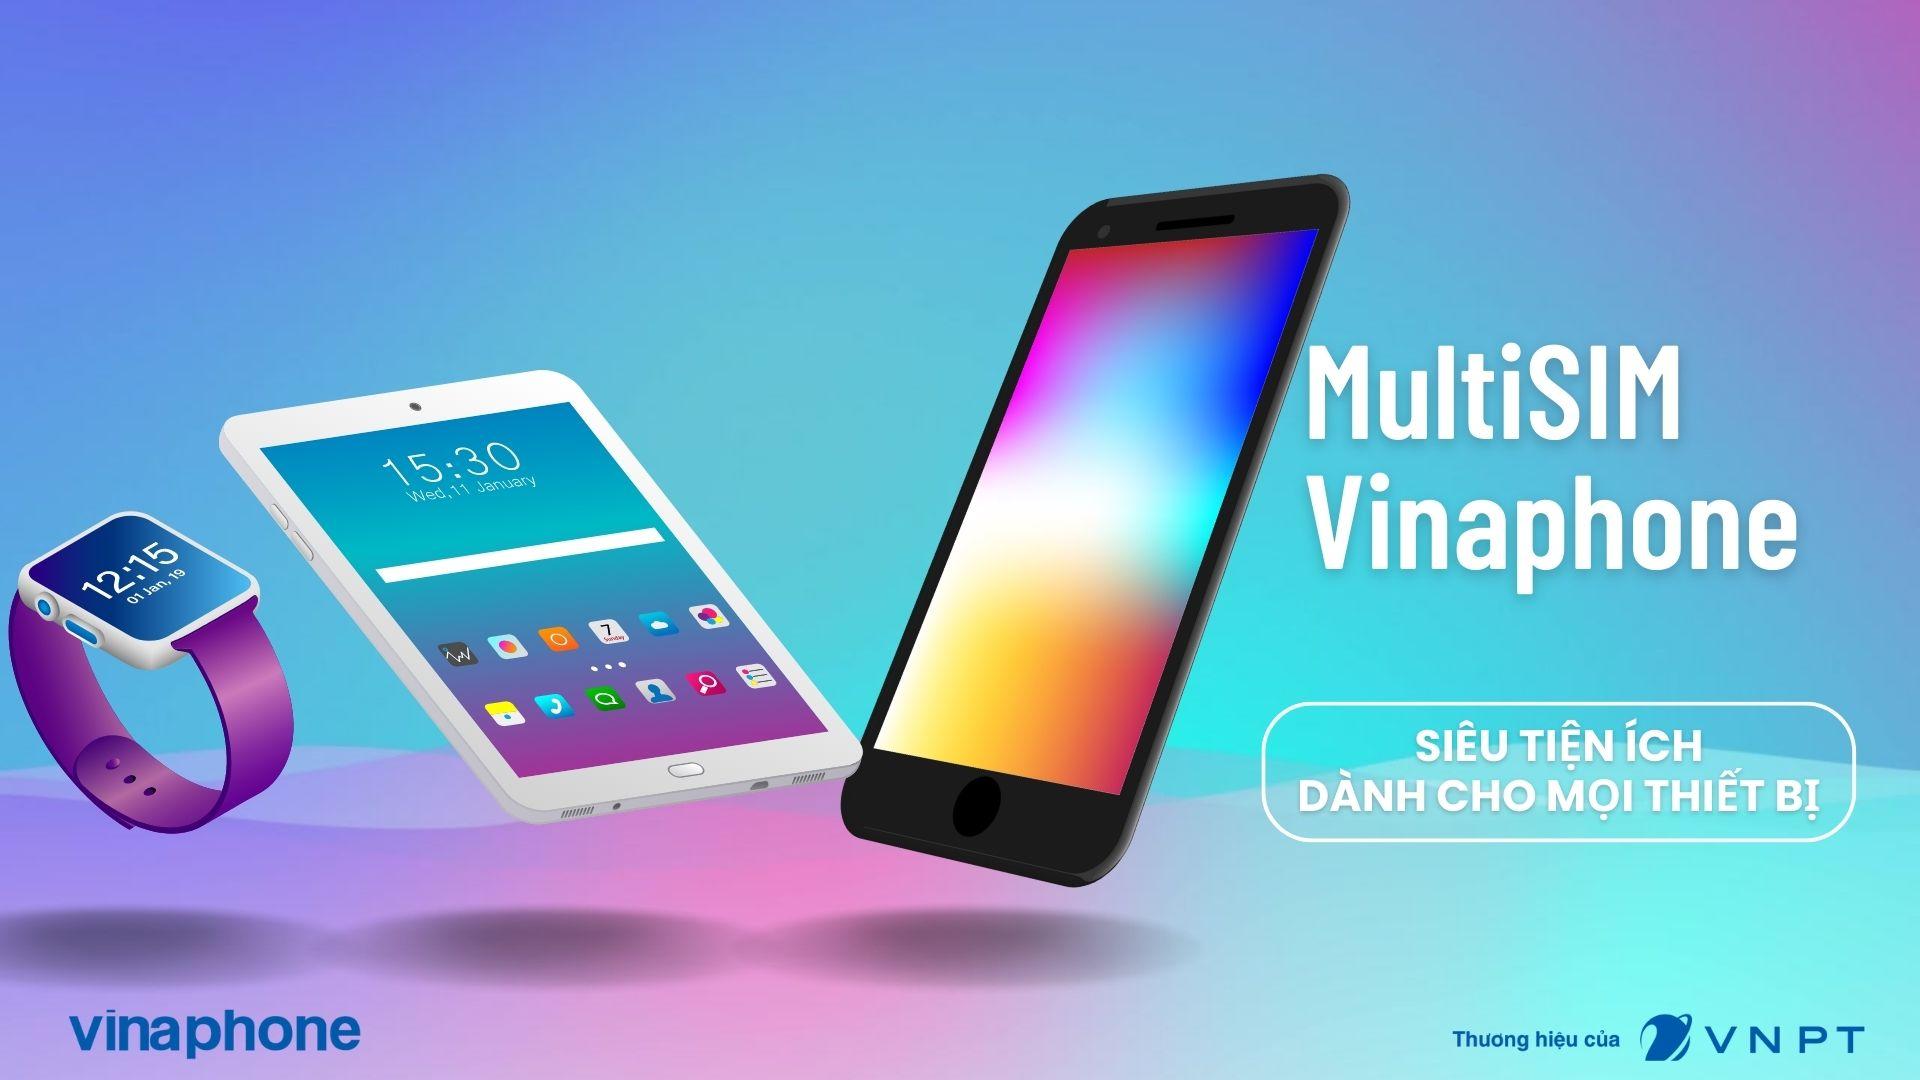 MultiSIM Vinaphone